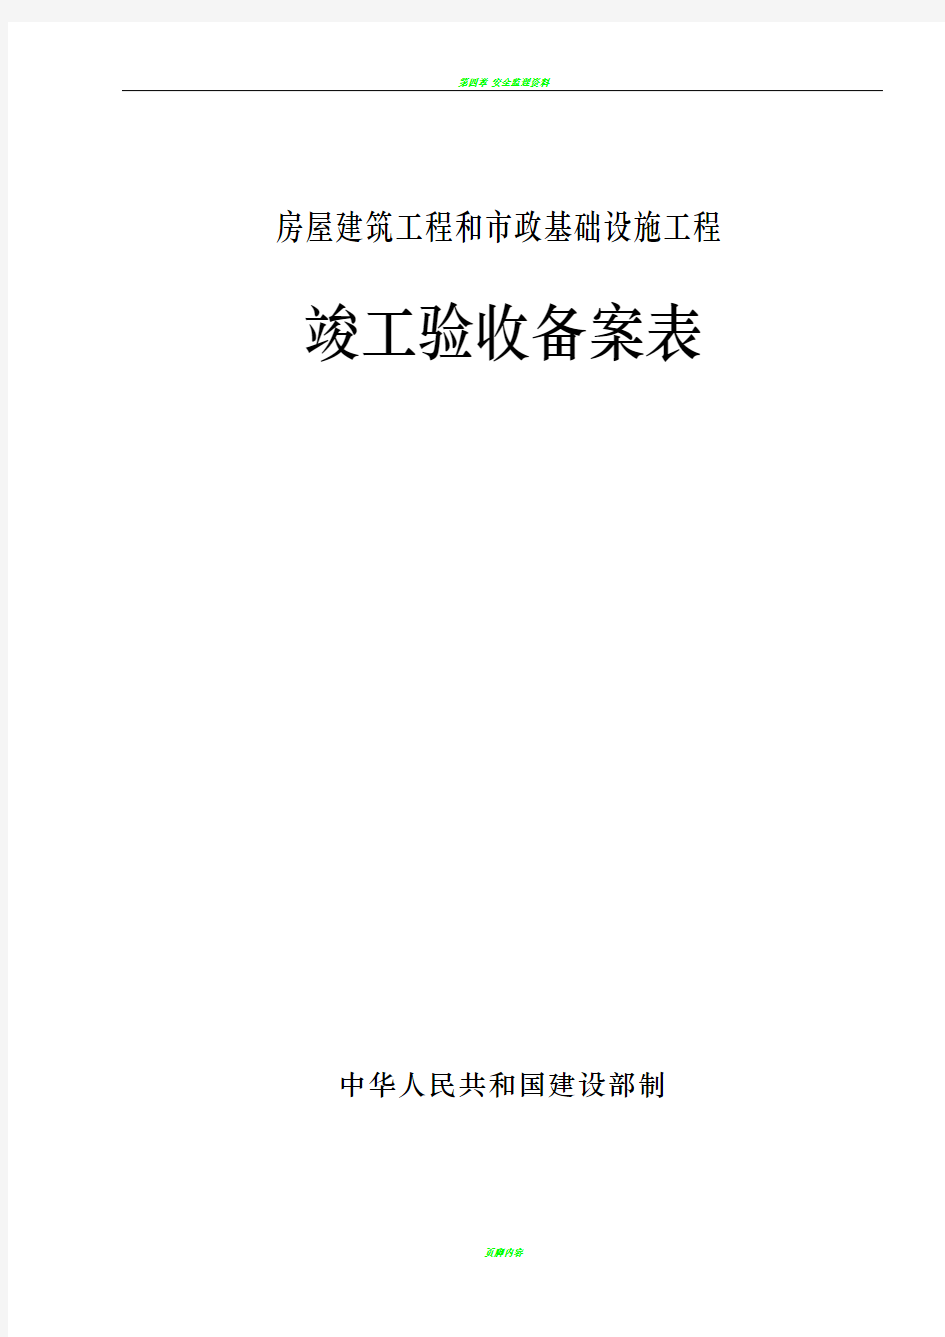 广东省统一用表《竣工验收备案表》填写范例